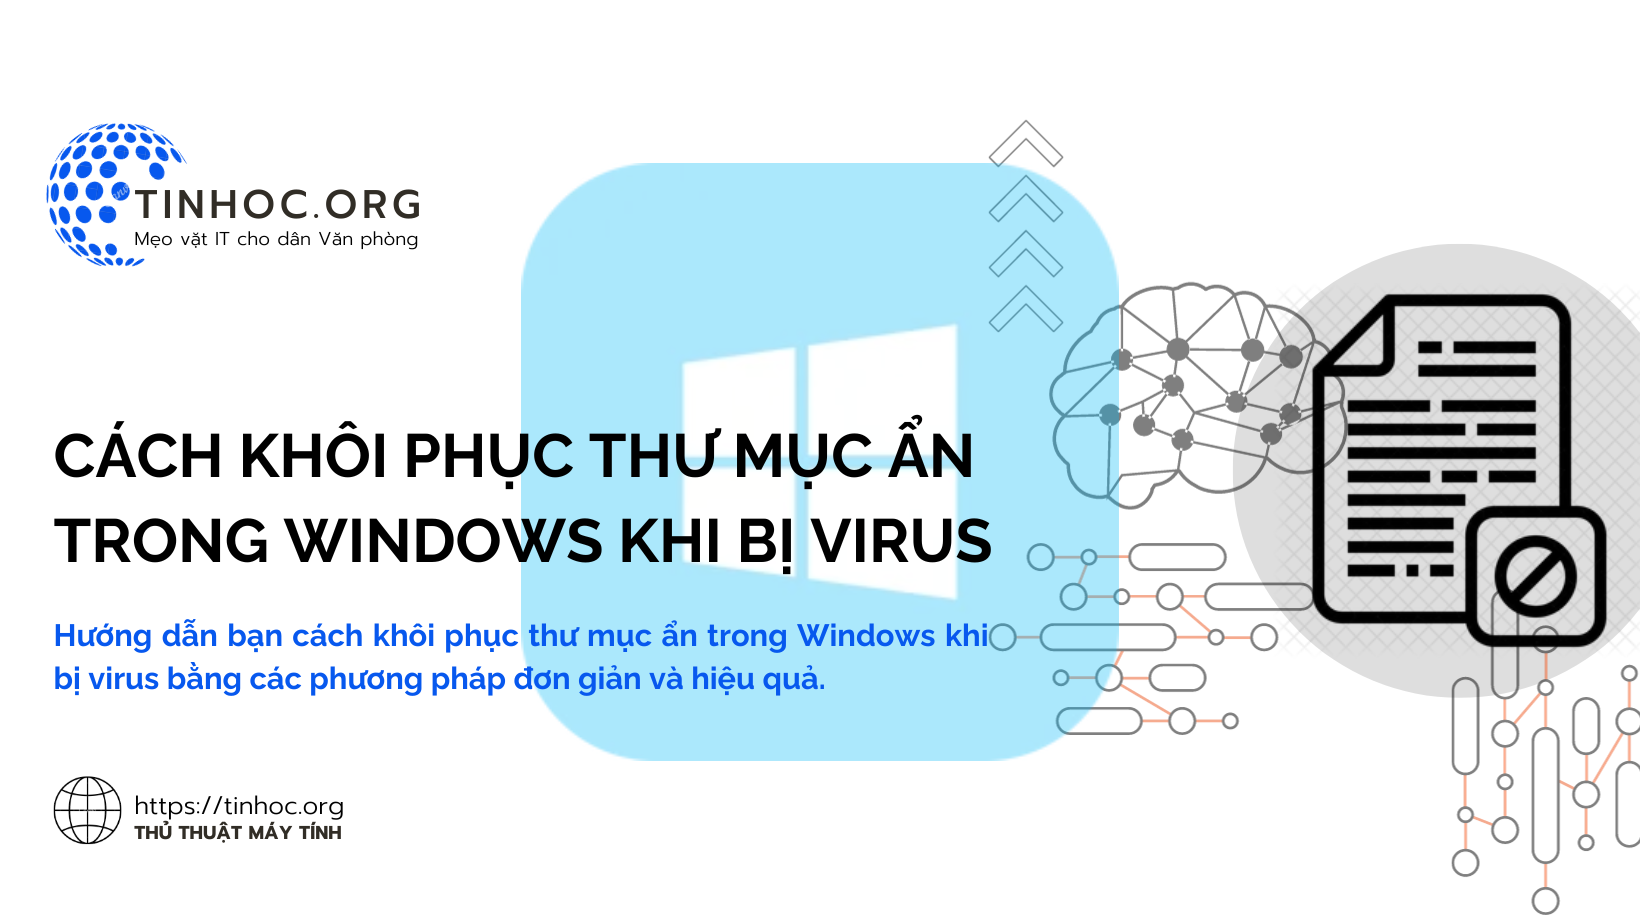 Hướng dẫn bạn cách khôi phục thư mục ẩn trong Windows khi bị virus bằng các phương pháp đơn giản và hiệu quả.